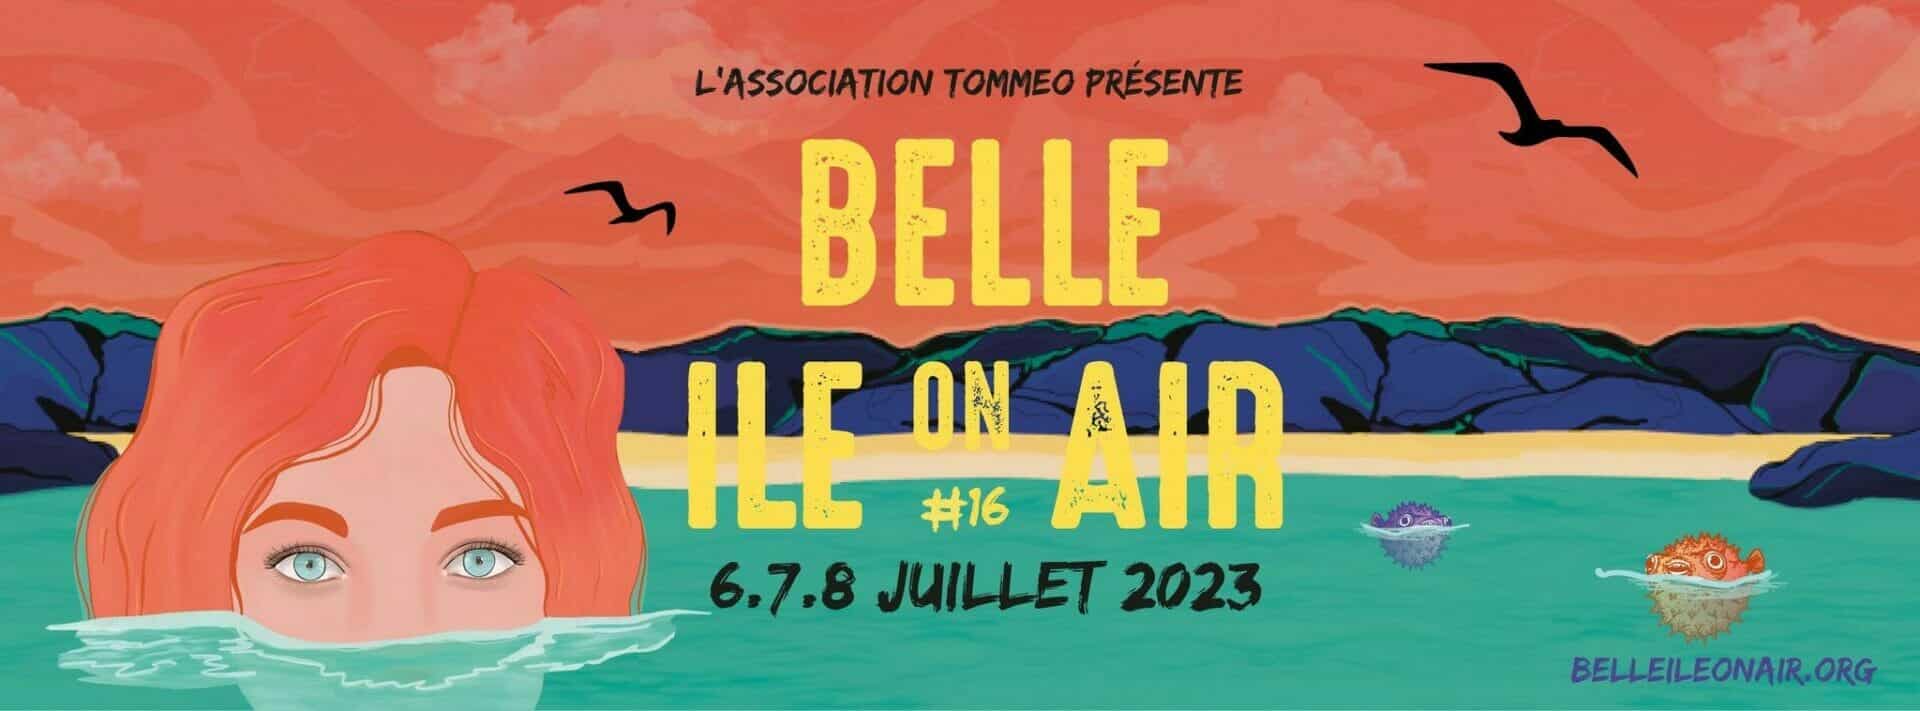 Festival Belle Ile On Air, les 6, 7 et 8 juillet 2023 à Belle Ile en Mer